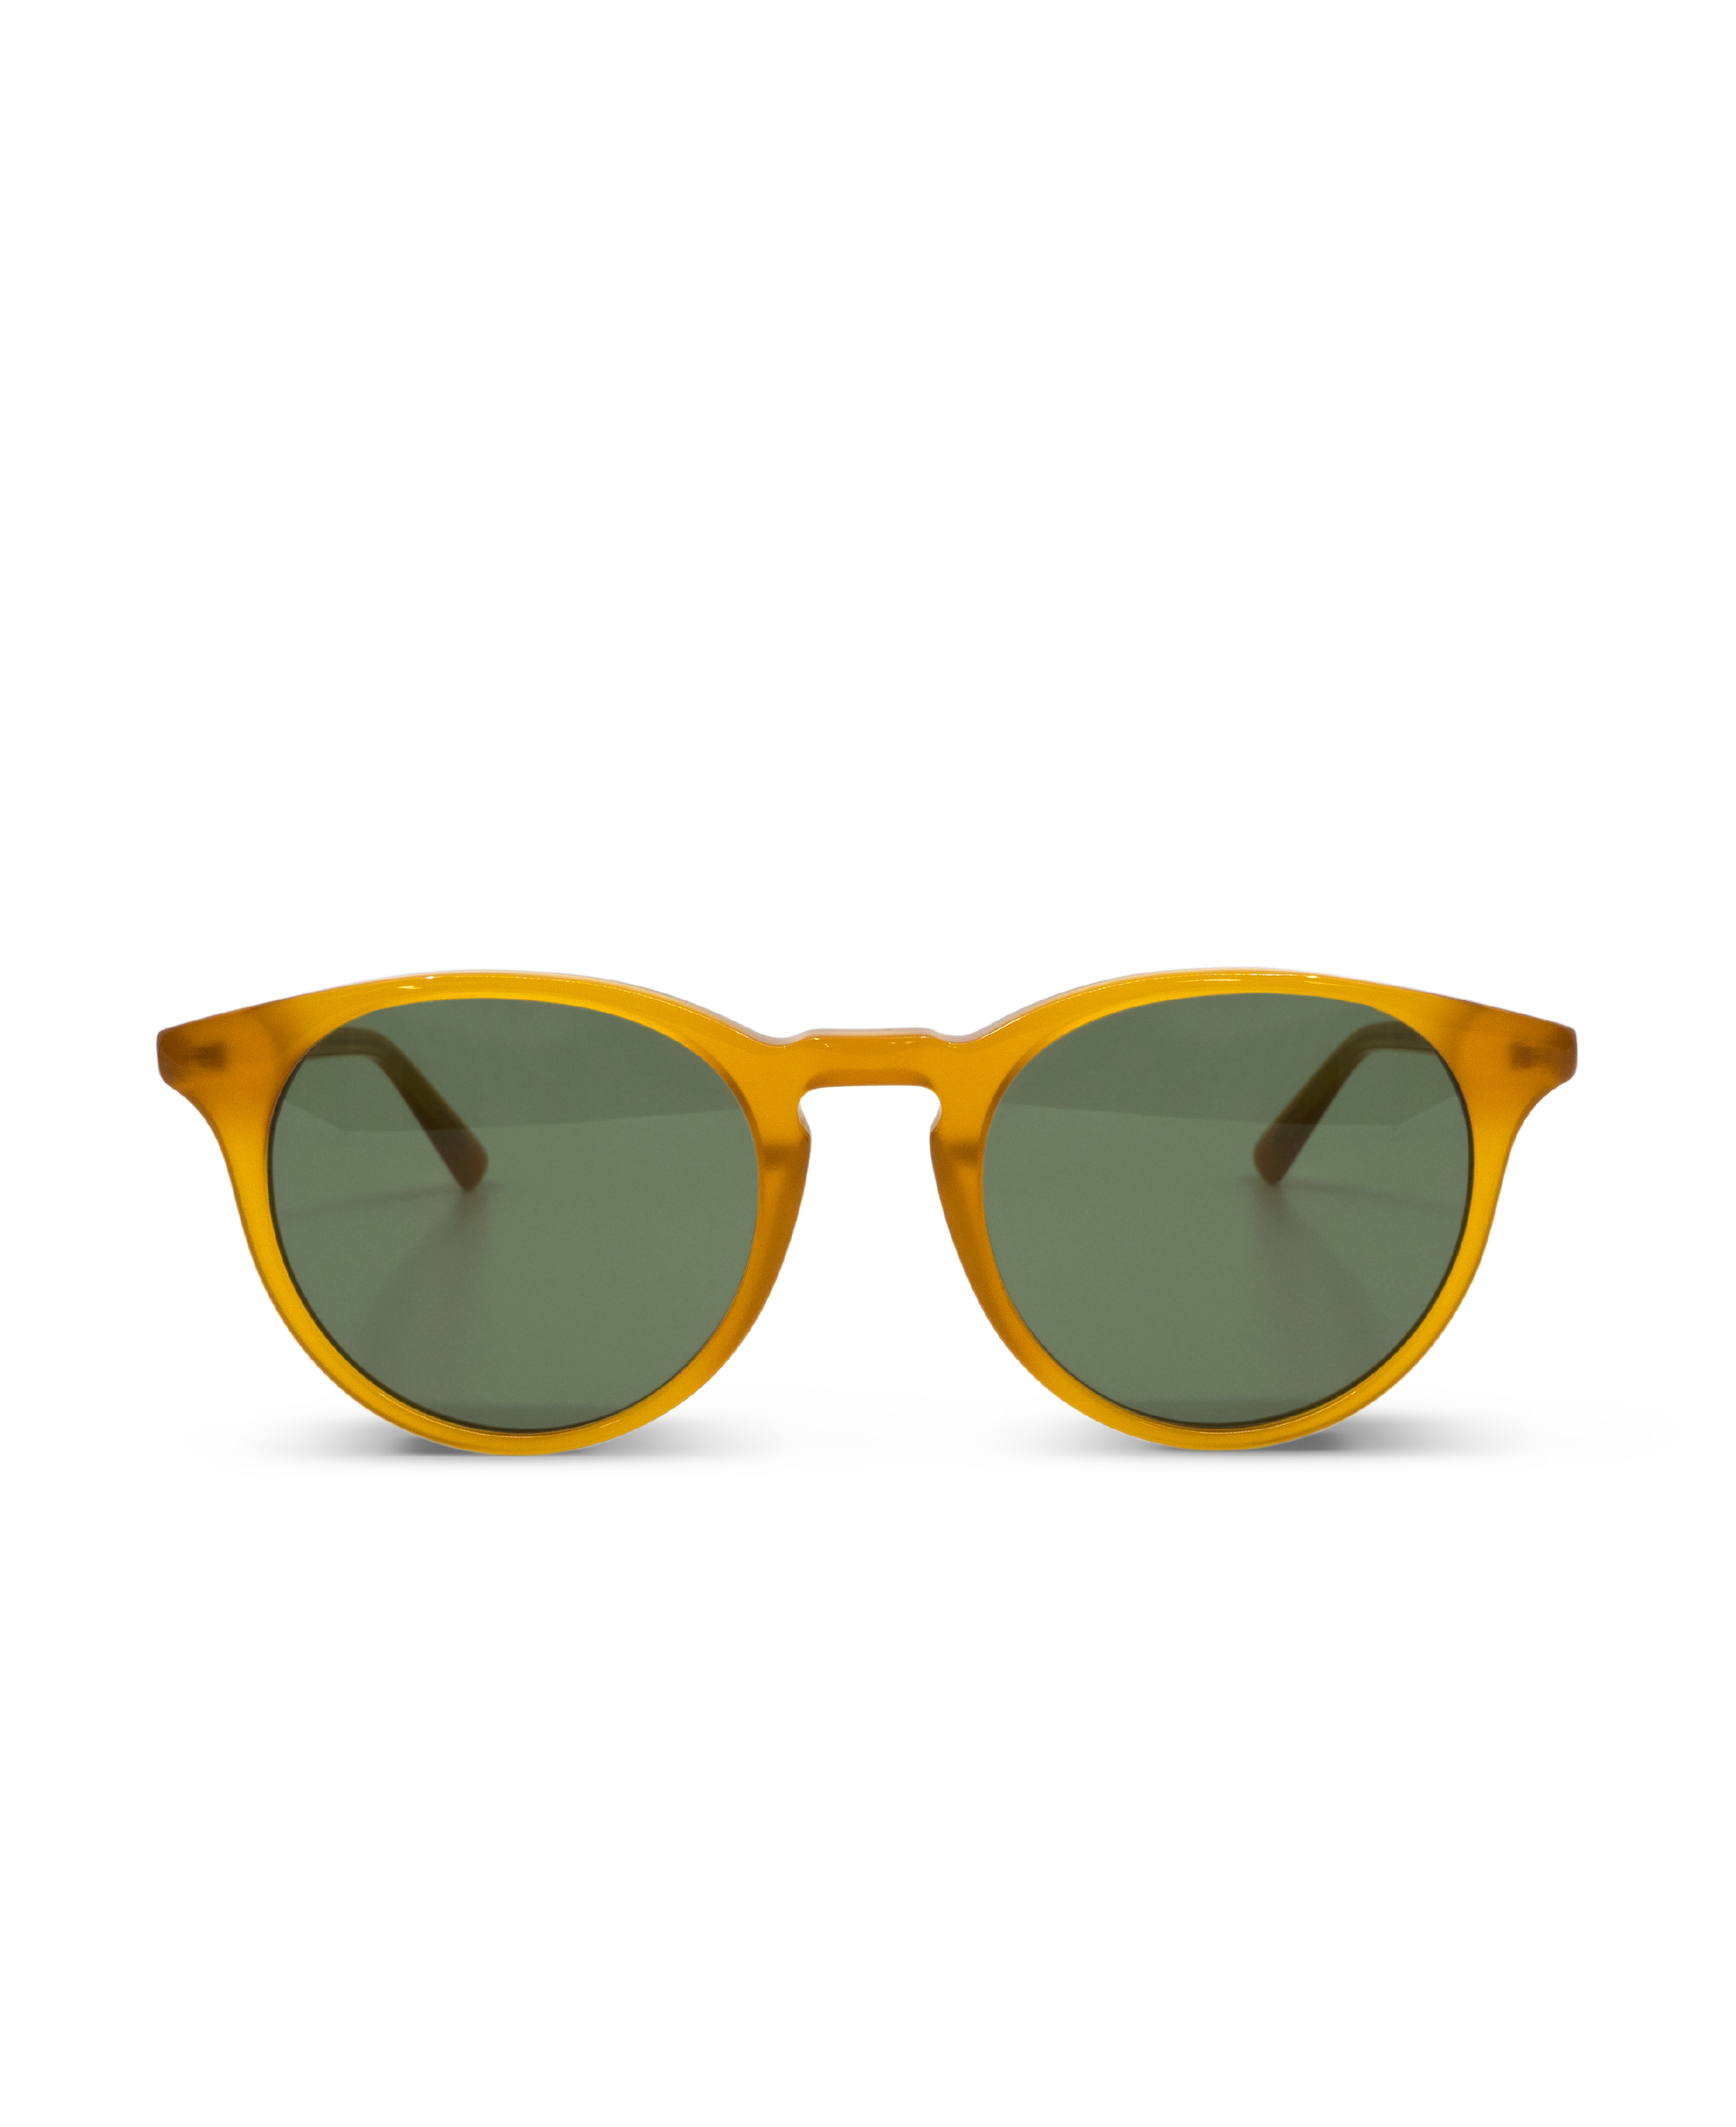 Sunglasses New Depp in Amber w. Green lenses